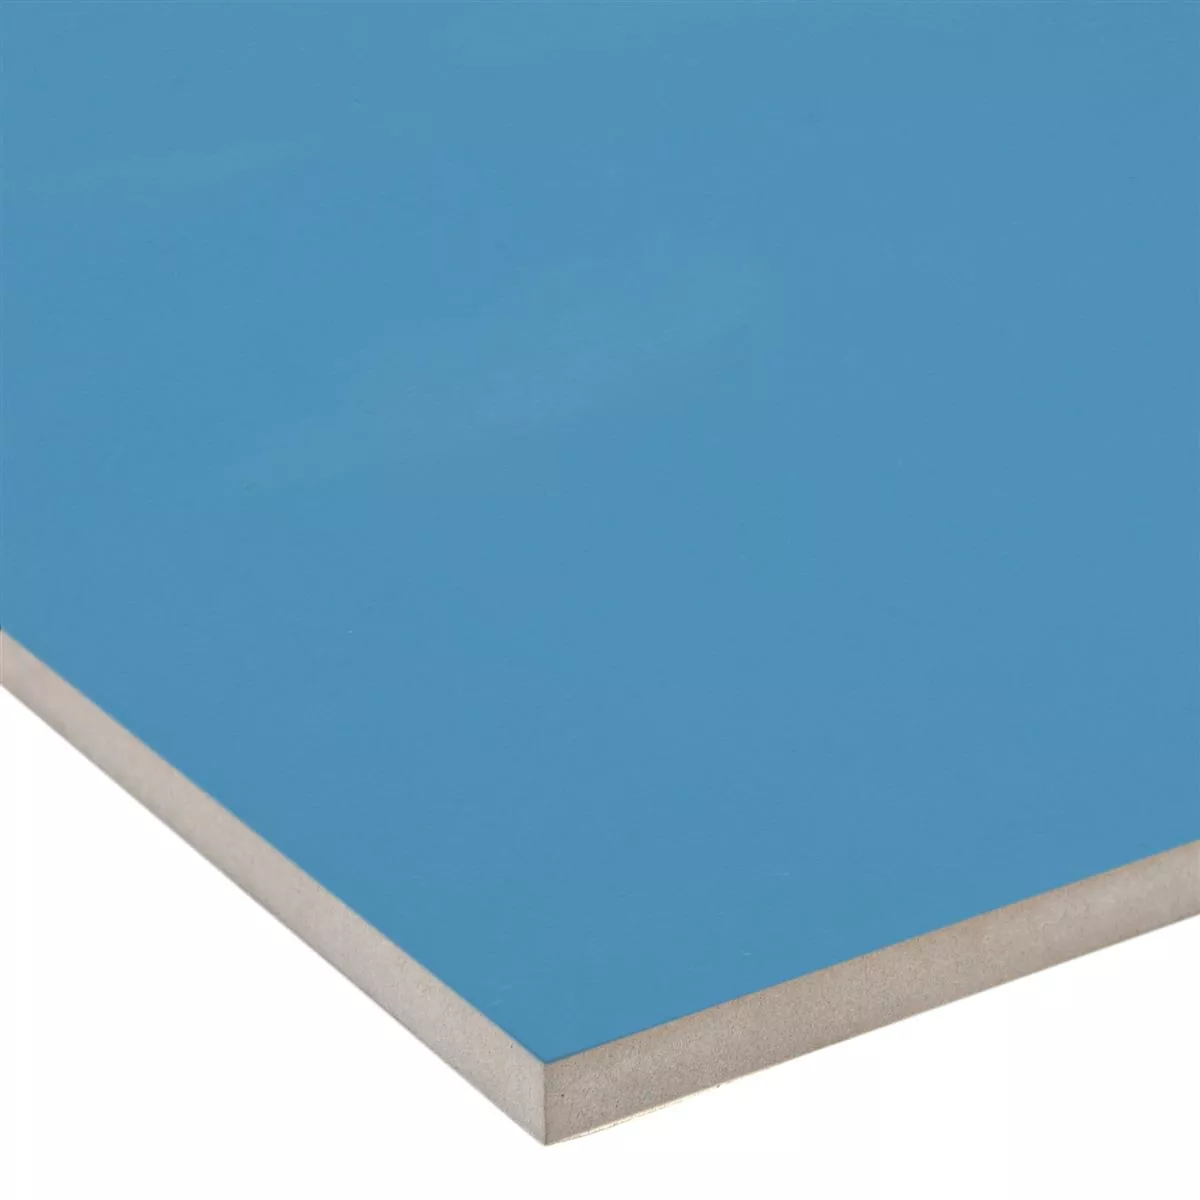 Πλακάκι Tοίχου Contento Μπλε 20x50cm